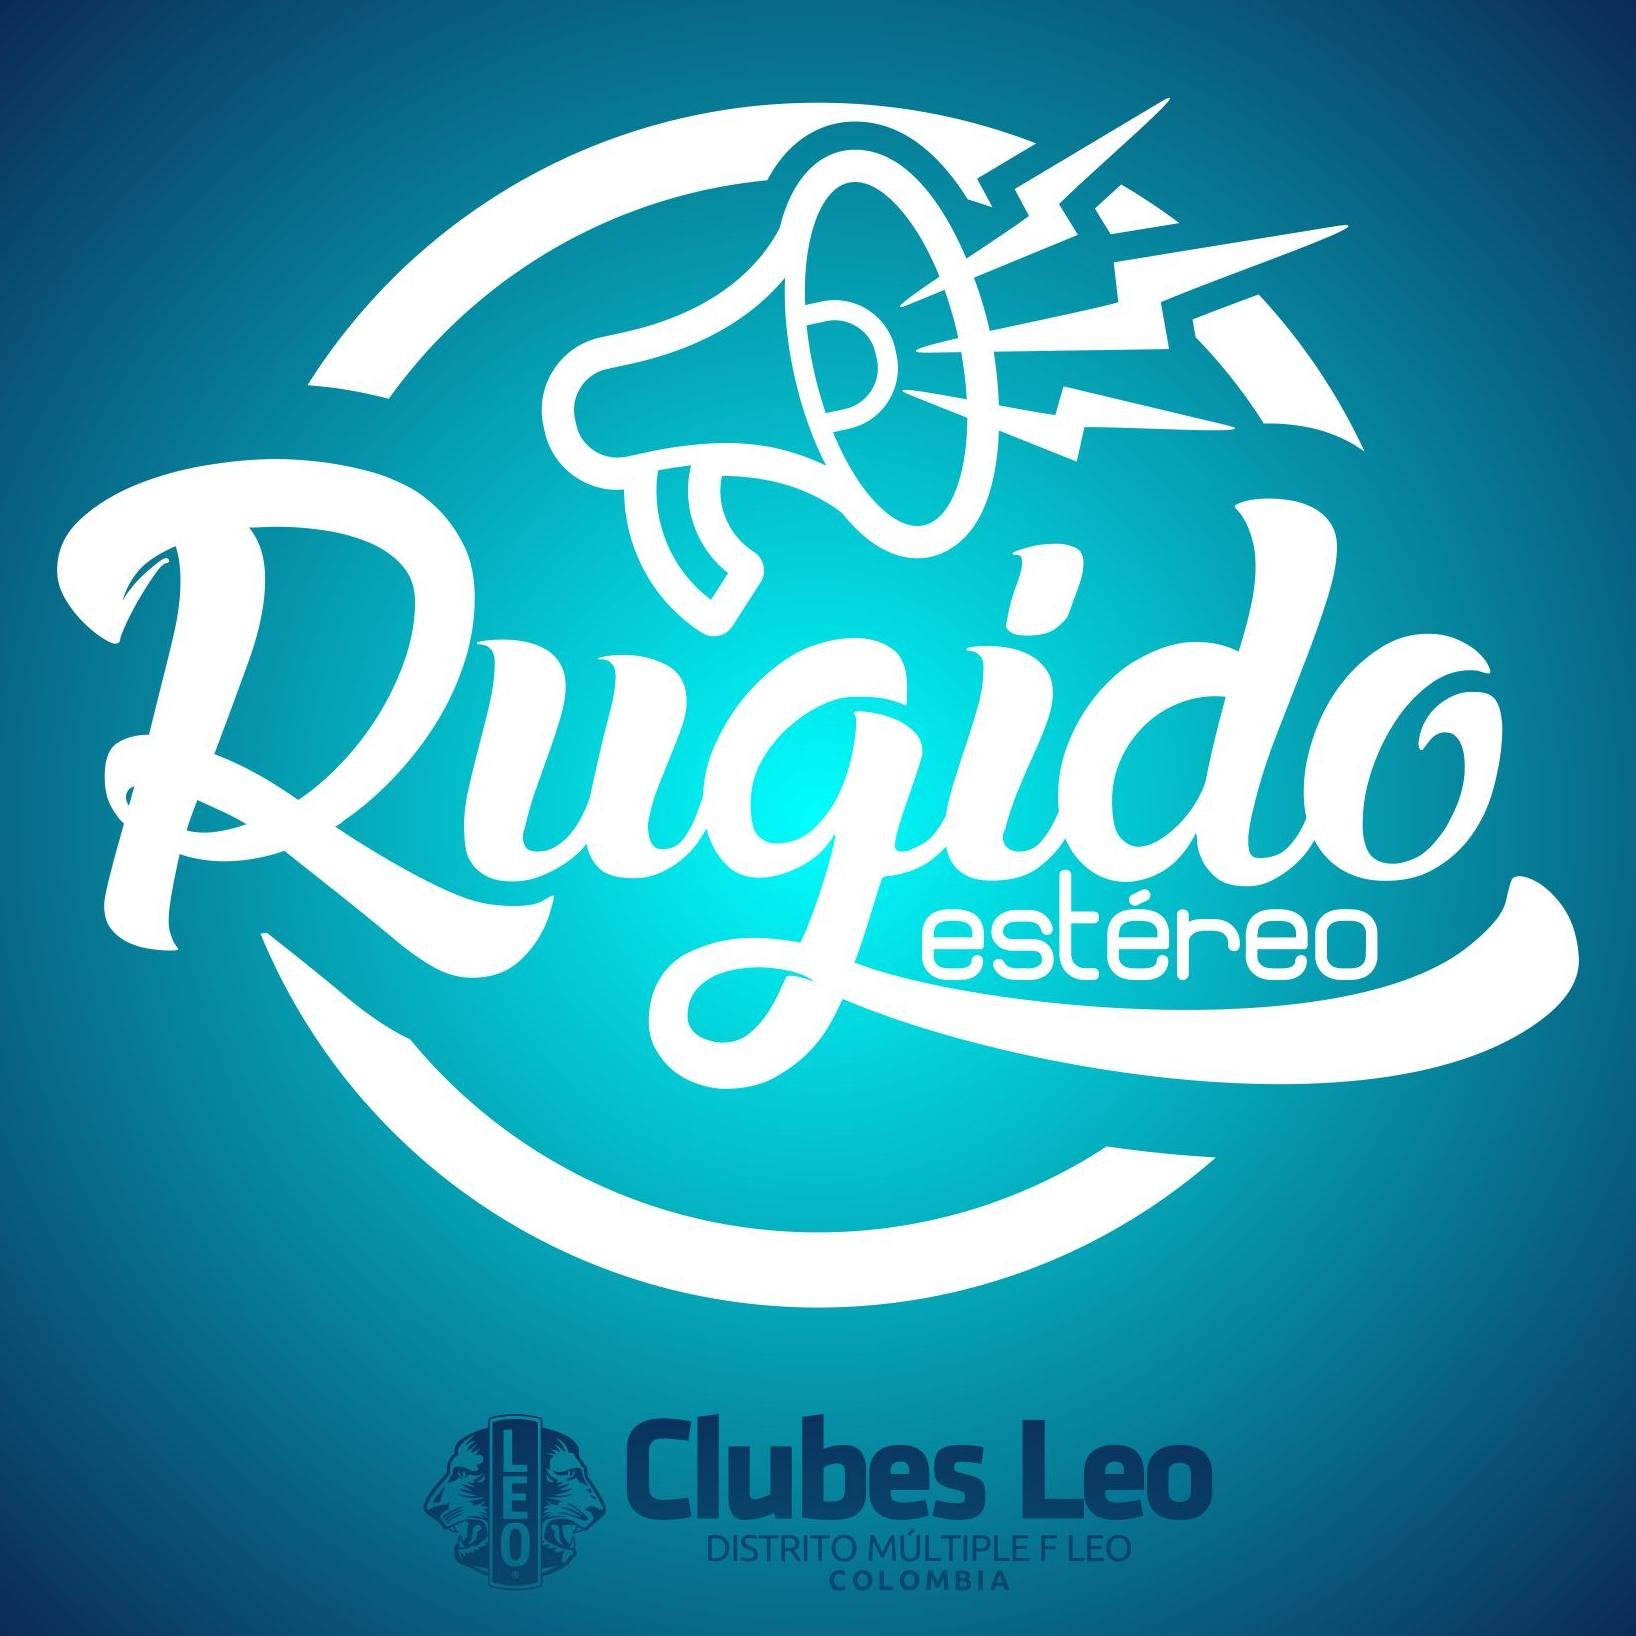 Escucha la mejor música en la emisora más importante de los Clubes Leo de latinoamerica. #PasionLeo #RugidoEstereo